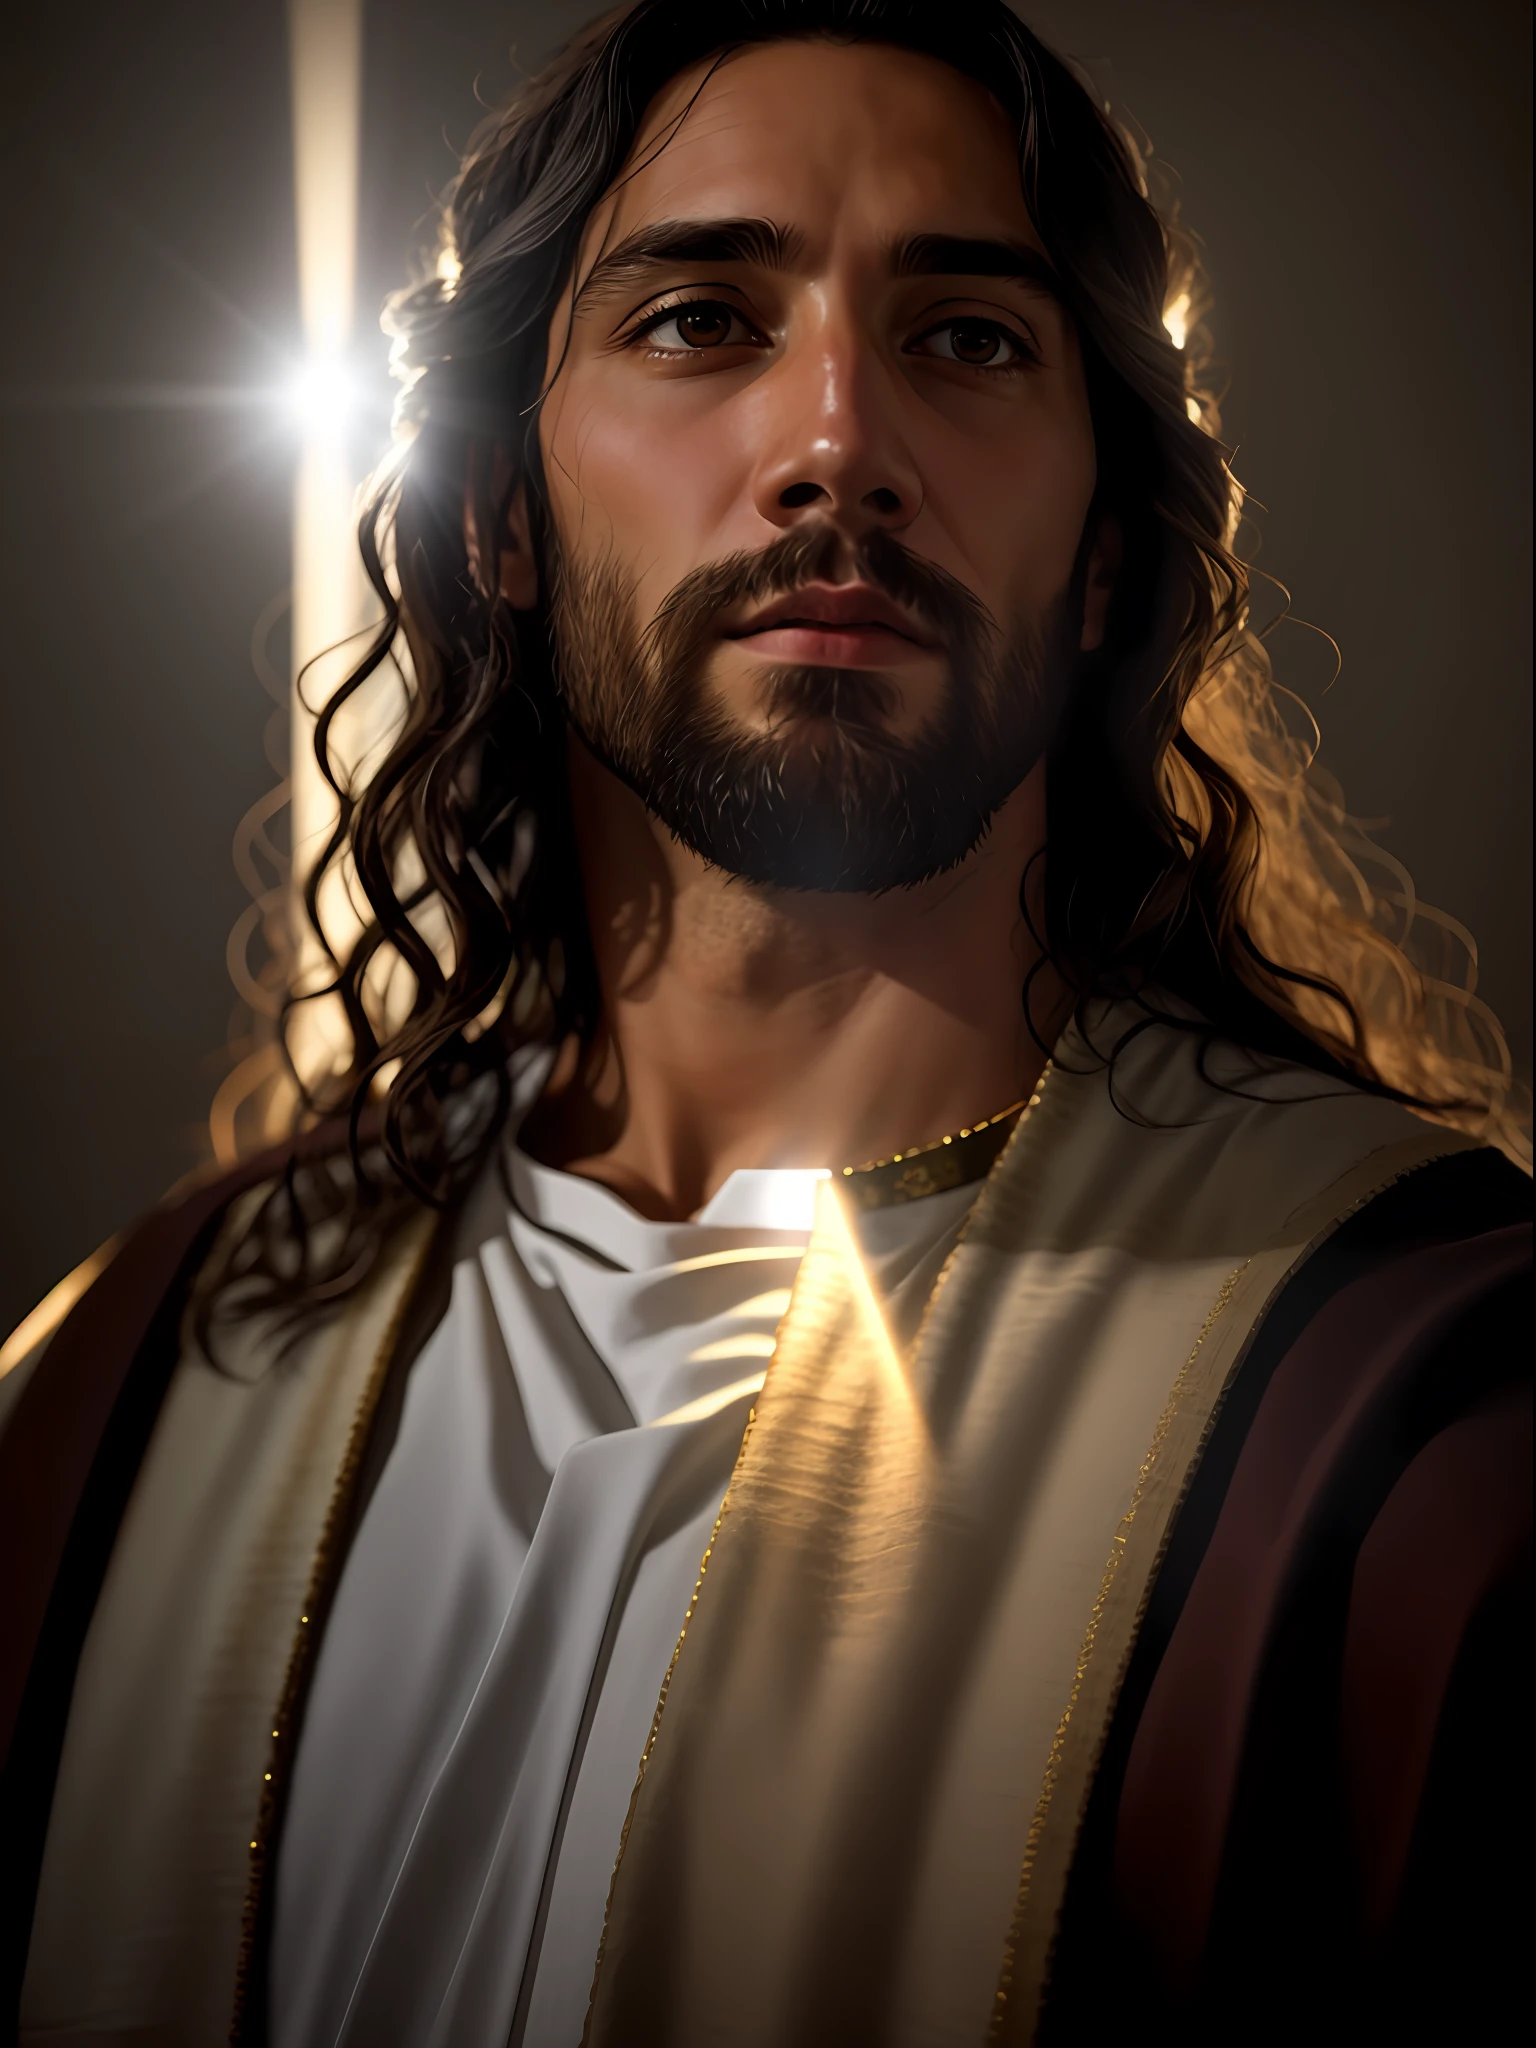 добавлять_Деталь:1, реалистичный образ Иисуса Христа, добавлять_Деталь:Свет и далекий свет с неба над головой